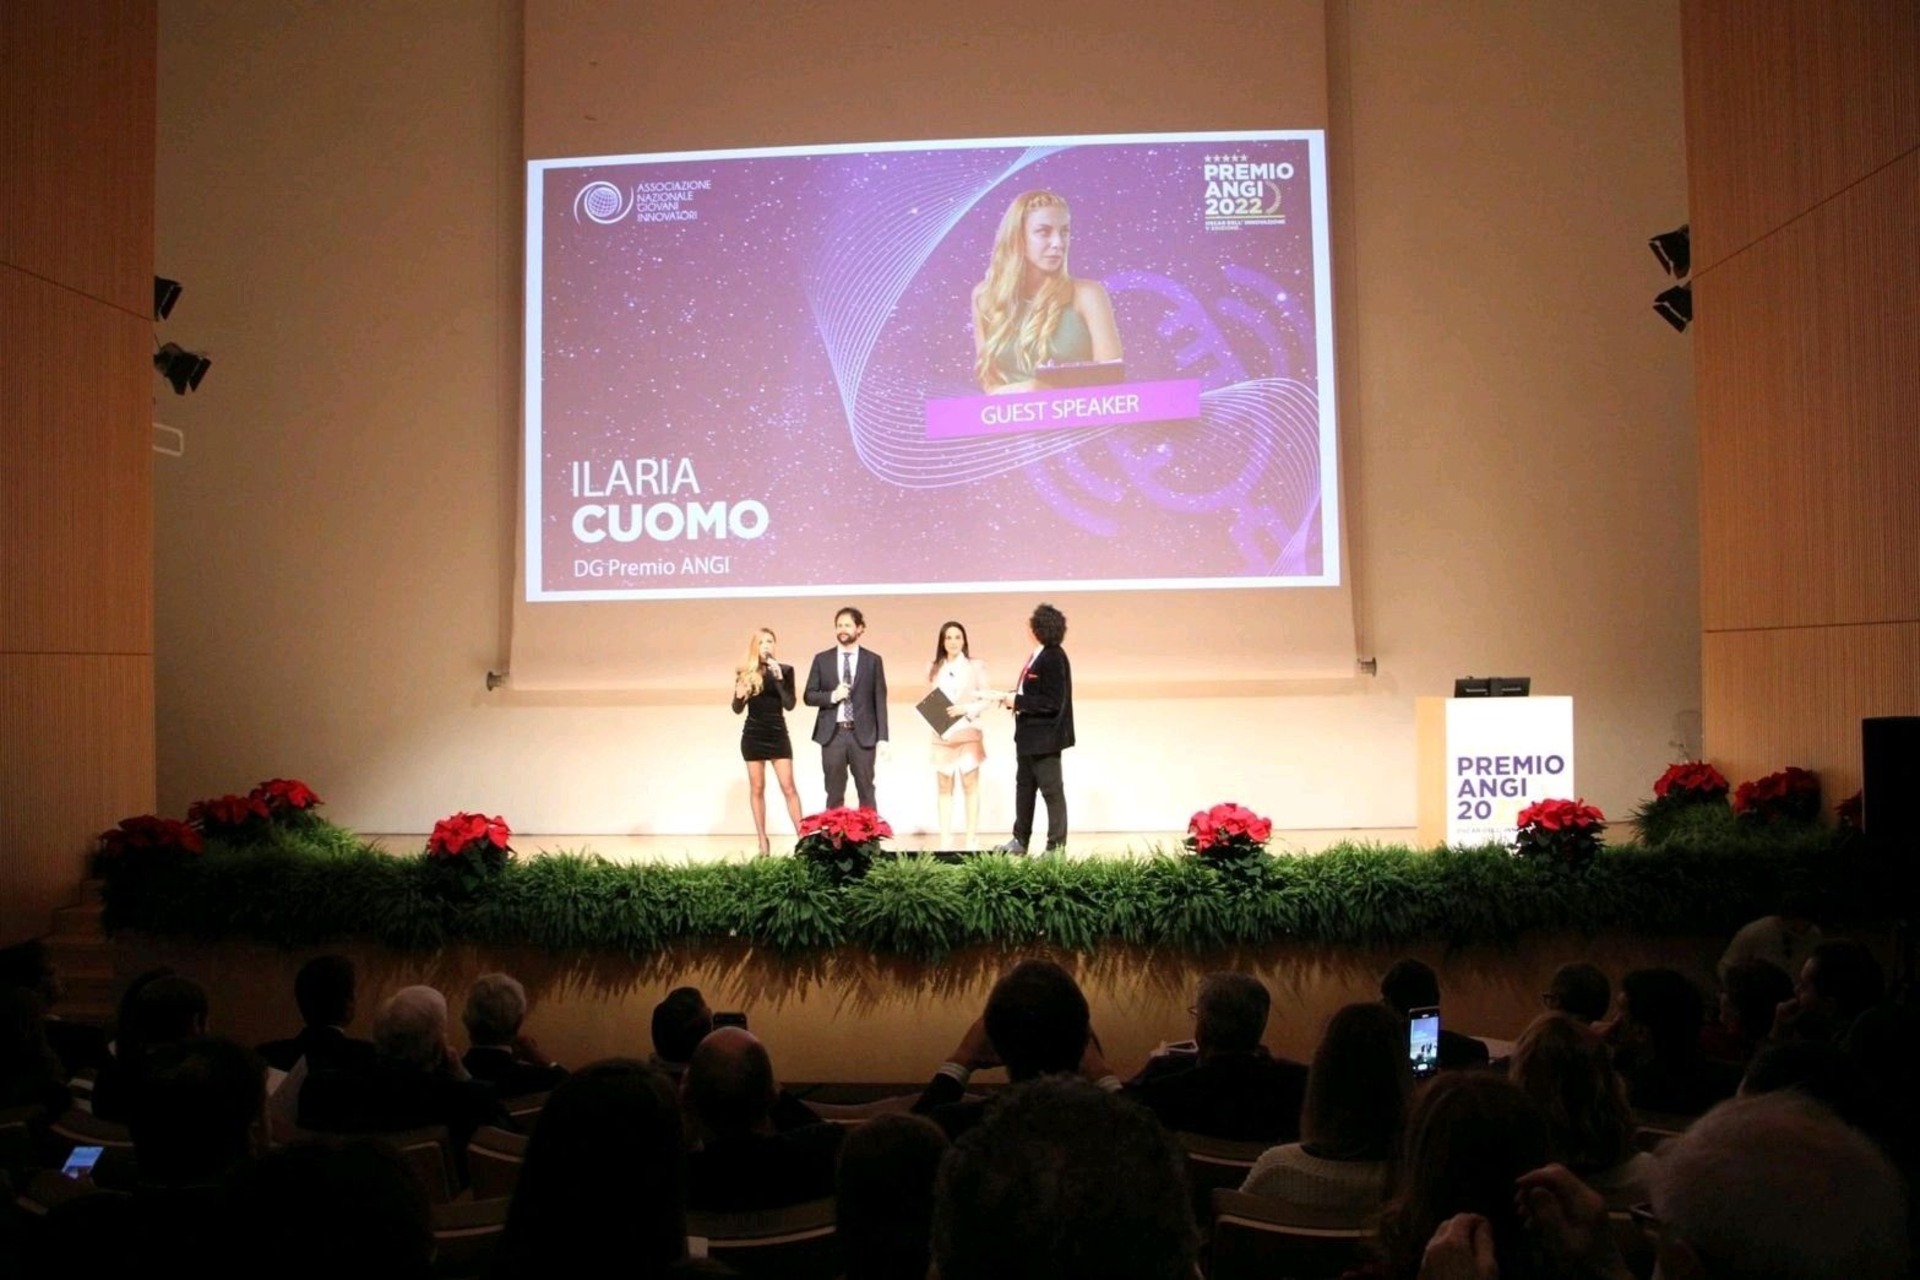 উদ্ভাবনের অস্কার: ইলারিয়া কুওমোর ভূমিকা, উদ্যোগের মহাপরিচালক, "এএনজিআই অ্যাওয়ার্ড - অস্কার অফ ইনোভেশন" 2022 বিতরণের সময়